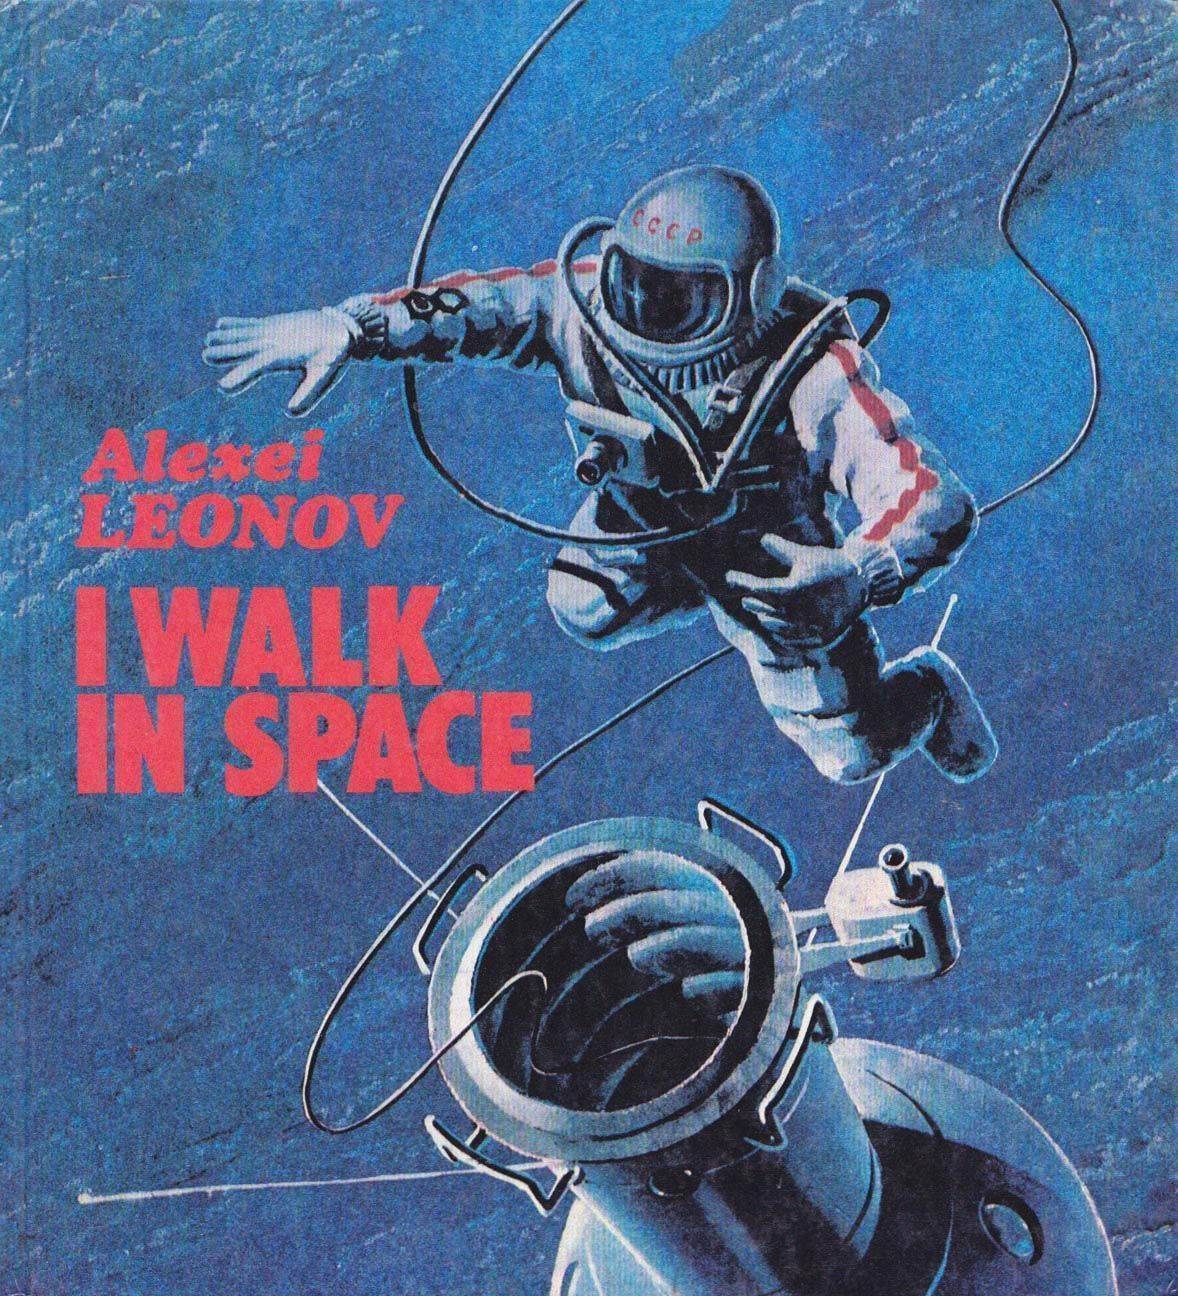 Alexei+Leonov+i+walk+in+space.jpg